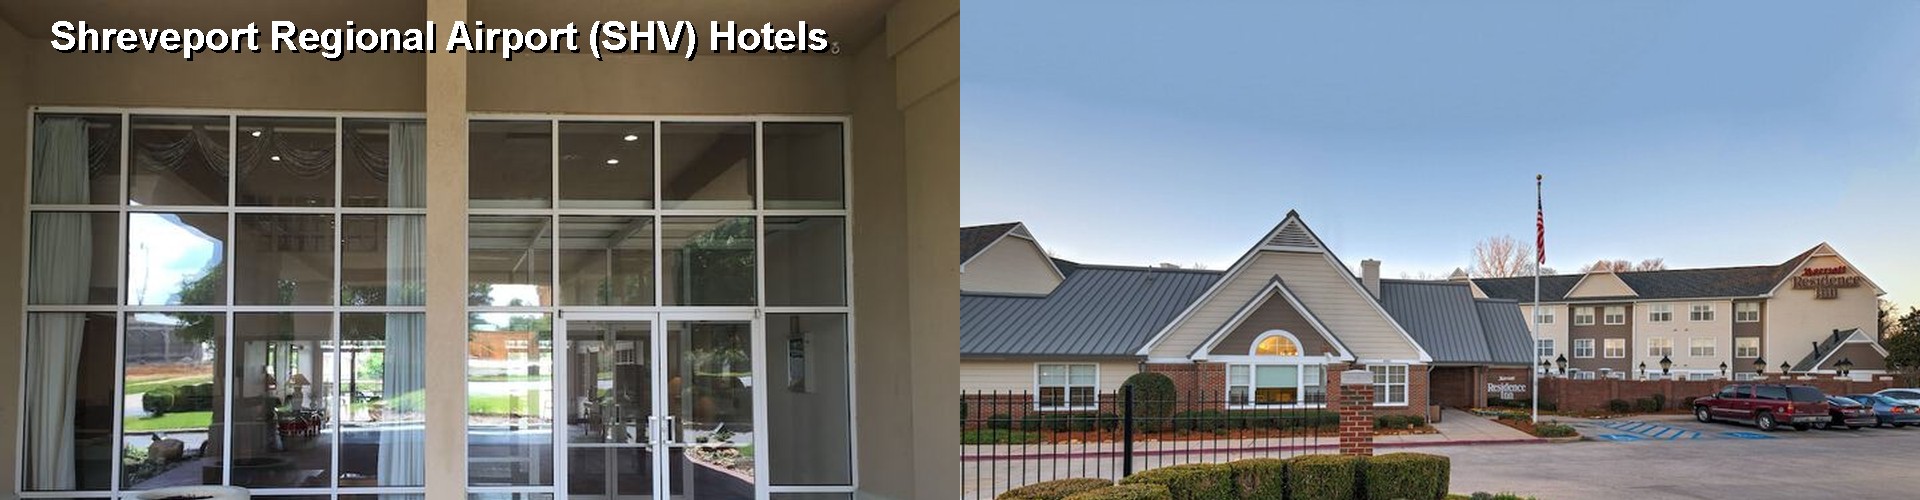 4 Best Hotels near Shreveport Regional Airport (SHV)